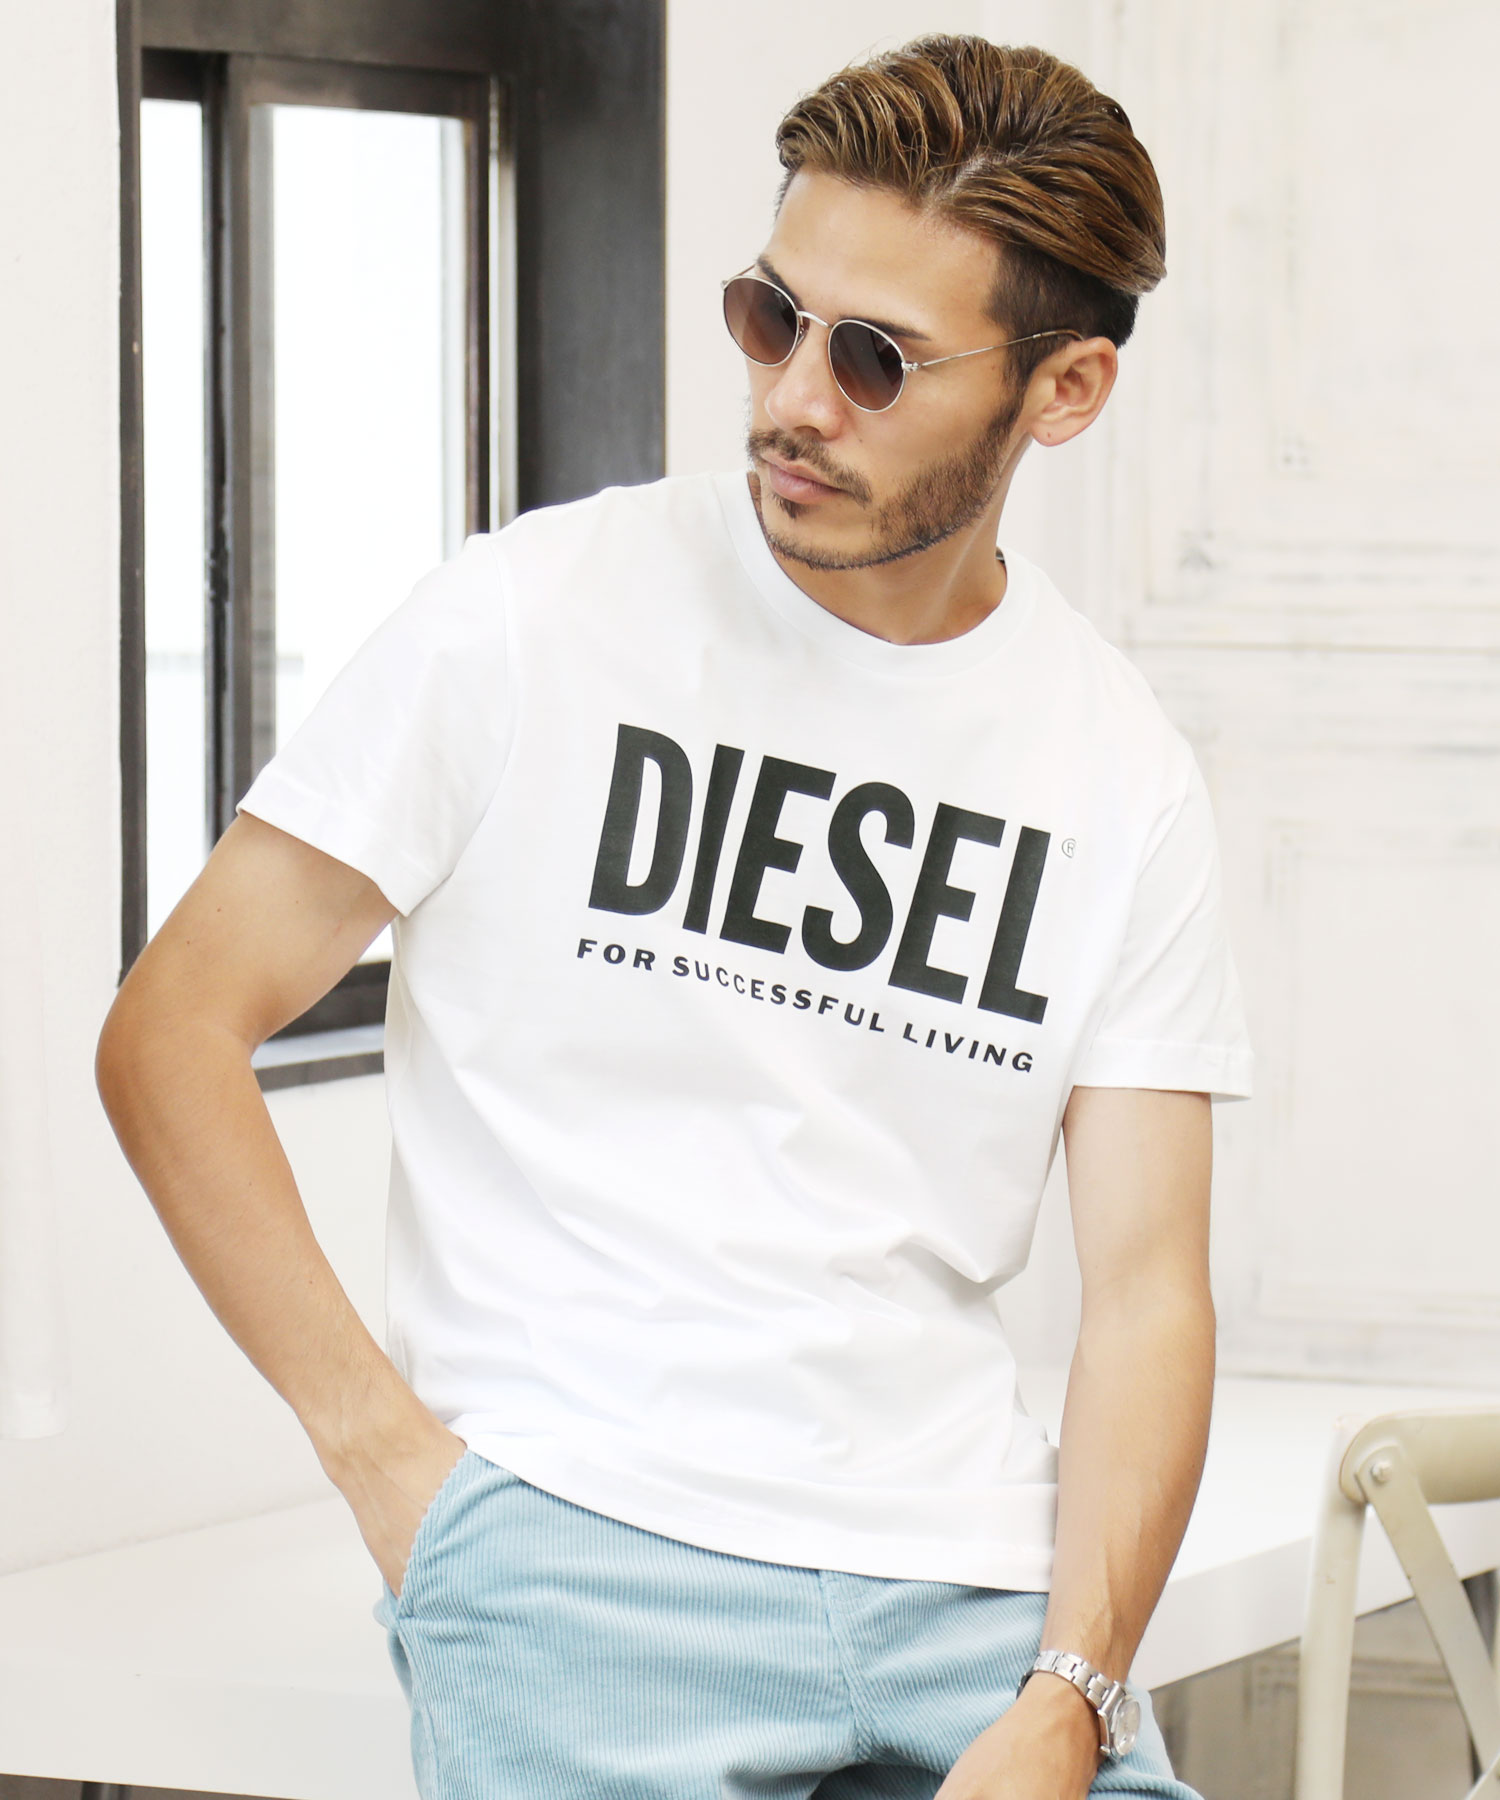 DIESEL(ディーゼル) T－Diego－Logo T－shirt / ブランド Tシャツ メンズ おしゃれ ティーシャツ 半袖 カットソー トップス